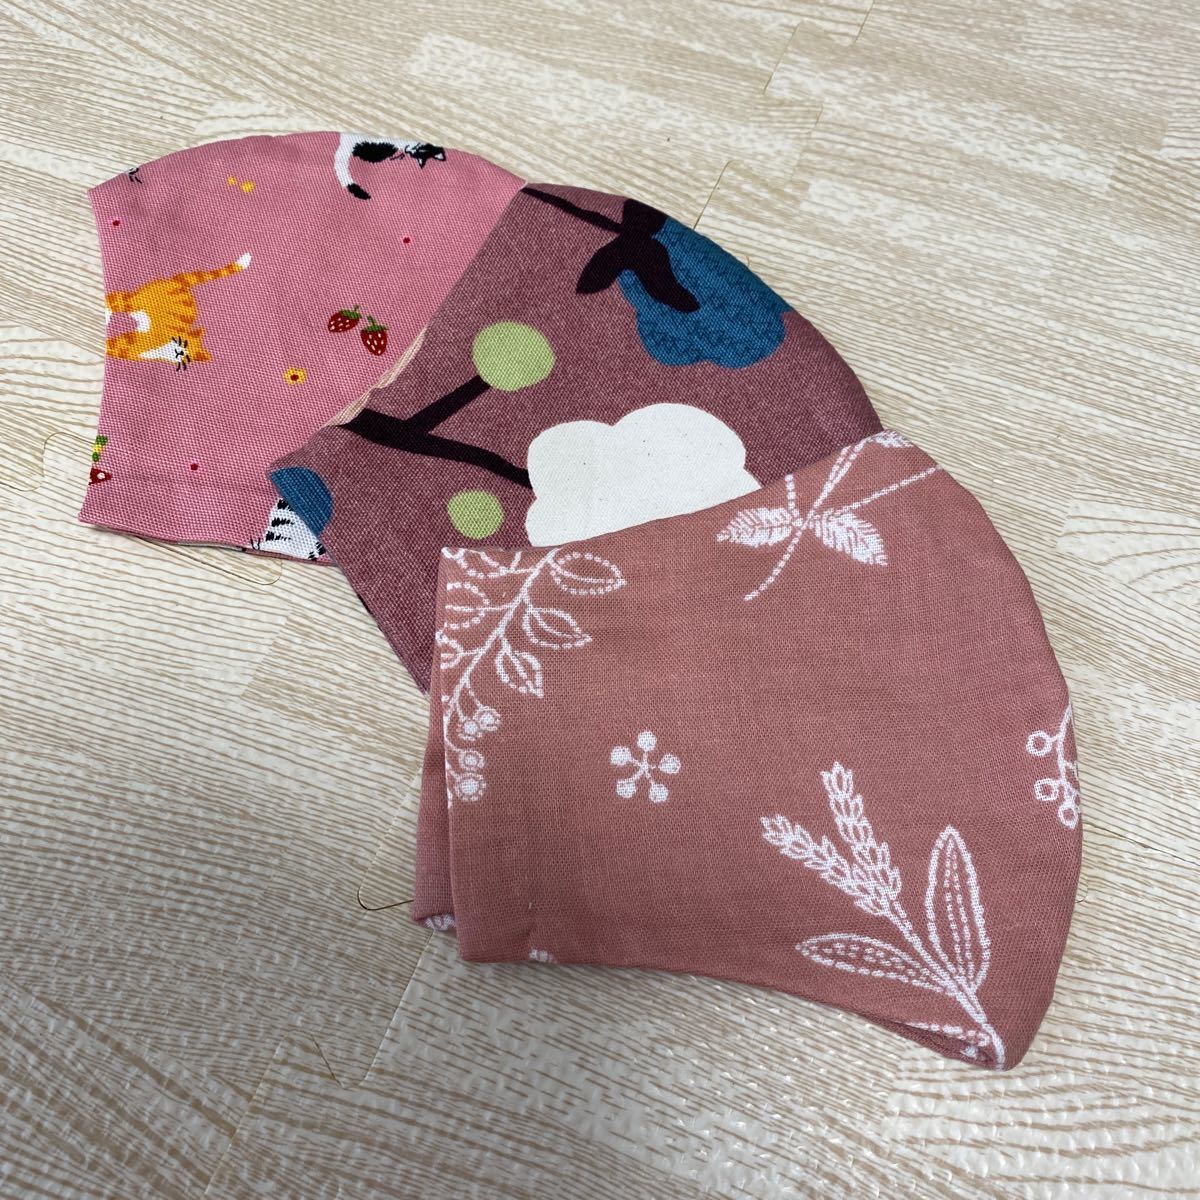 ハンドメイド インナーカバー インナーシート 花柄 猫柄 cat かわいい 春 収納ポケット付きデザイン 3枚セット 立体NO12